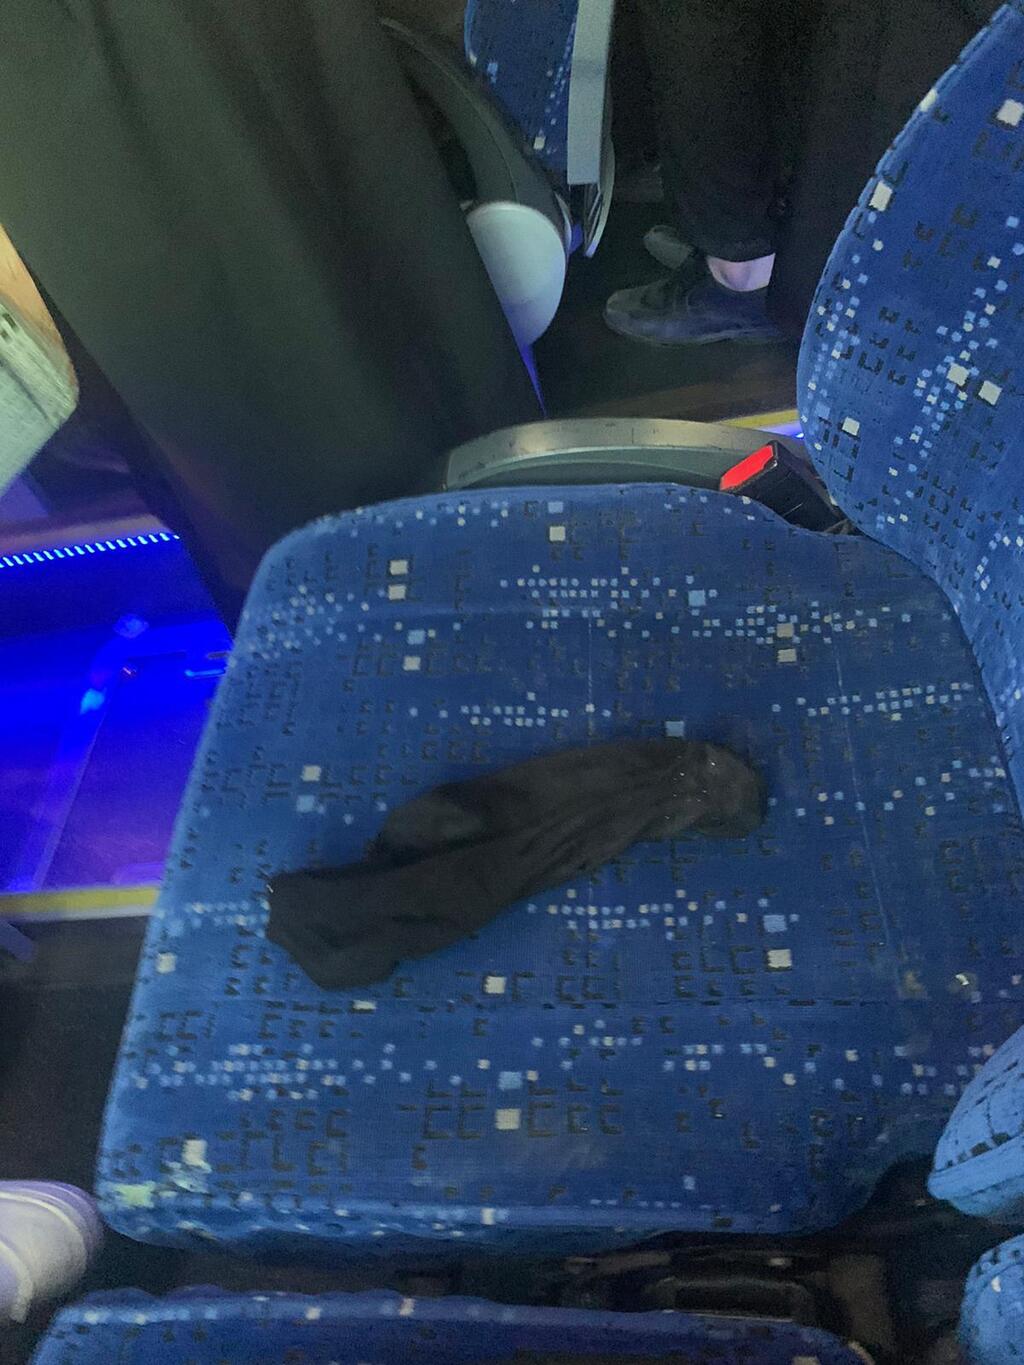 גרב משומשת שנוסע חרדי הניח על המושב באוטובוס כדי להרחיק אישה